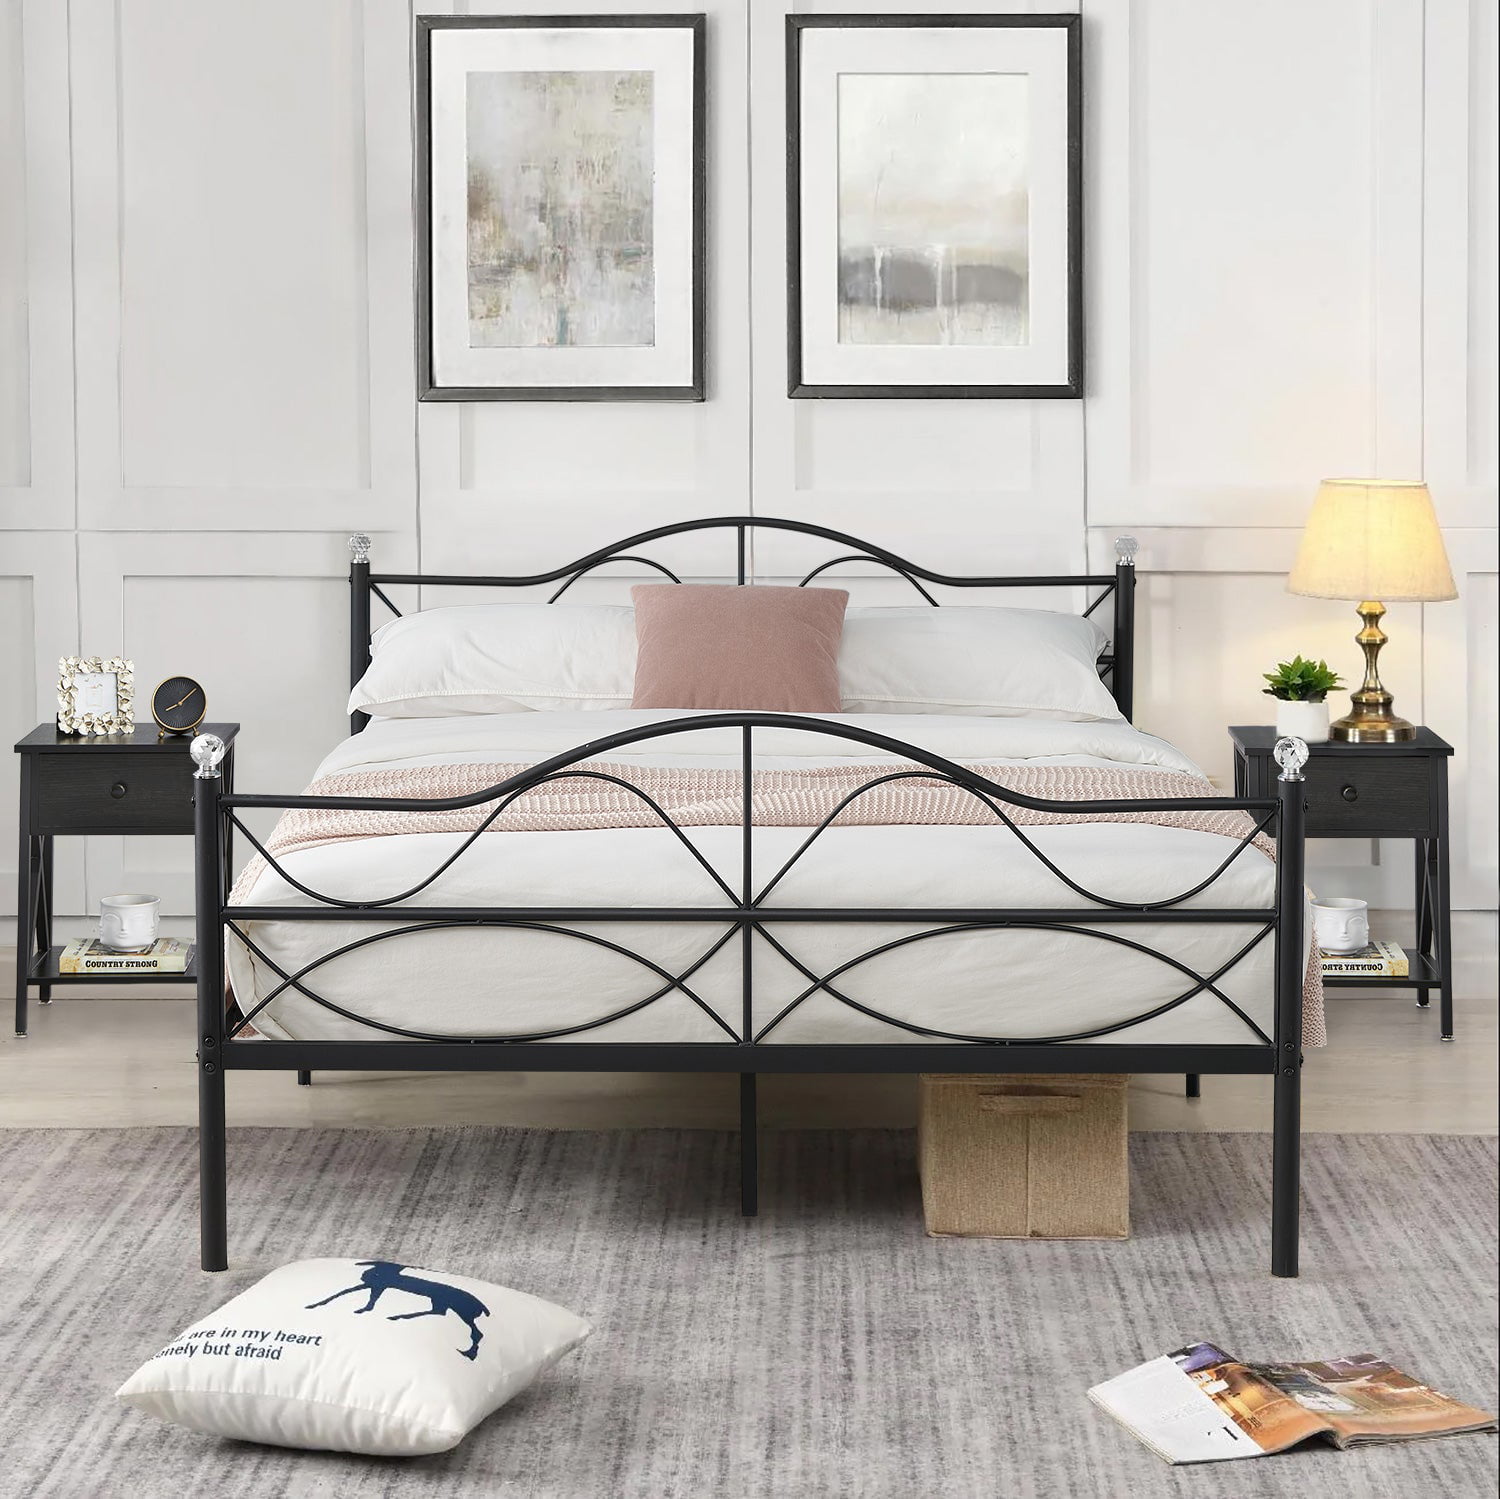 Vecelo Queen Size Metal Platform Bed, Metal Bed Frame With Headboard Queen Size